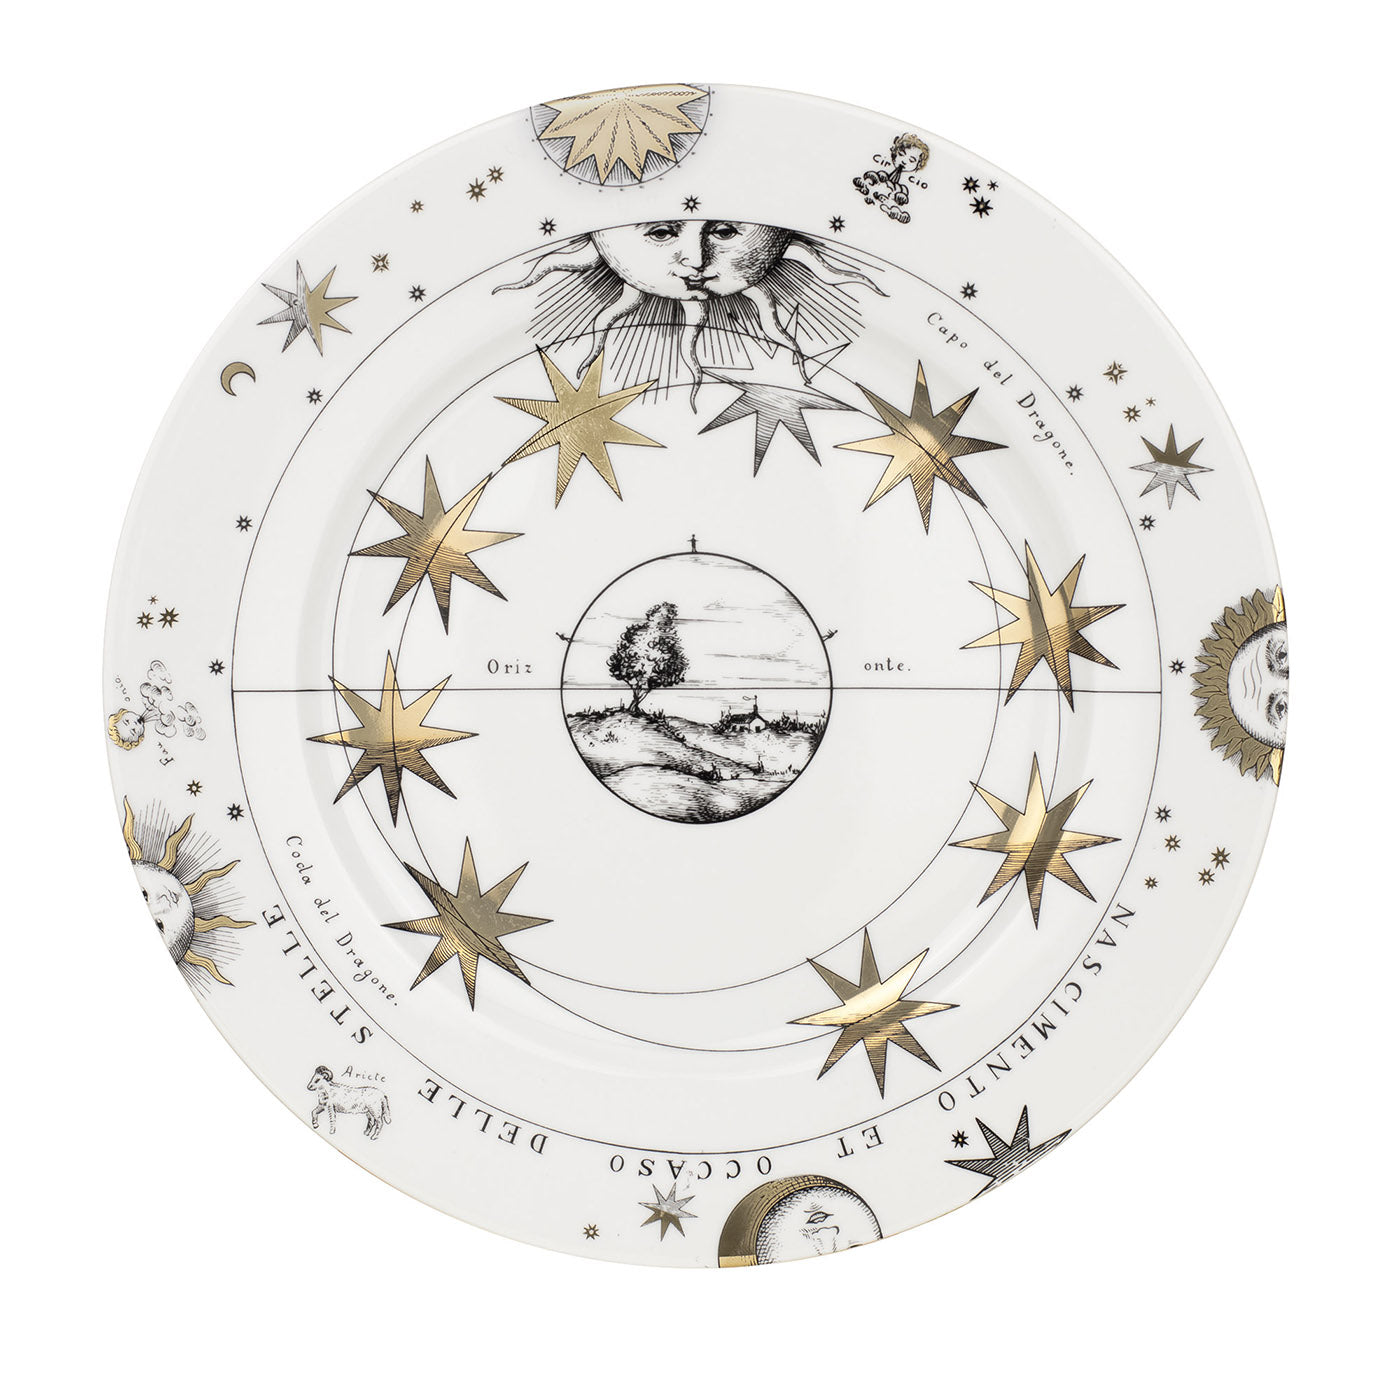 Placa decorativa Astronomici n.2 - Vista principal